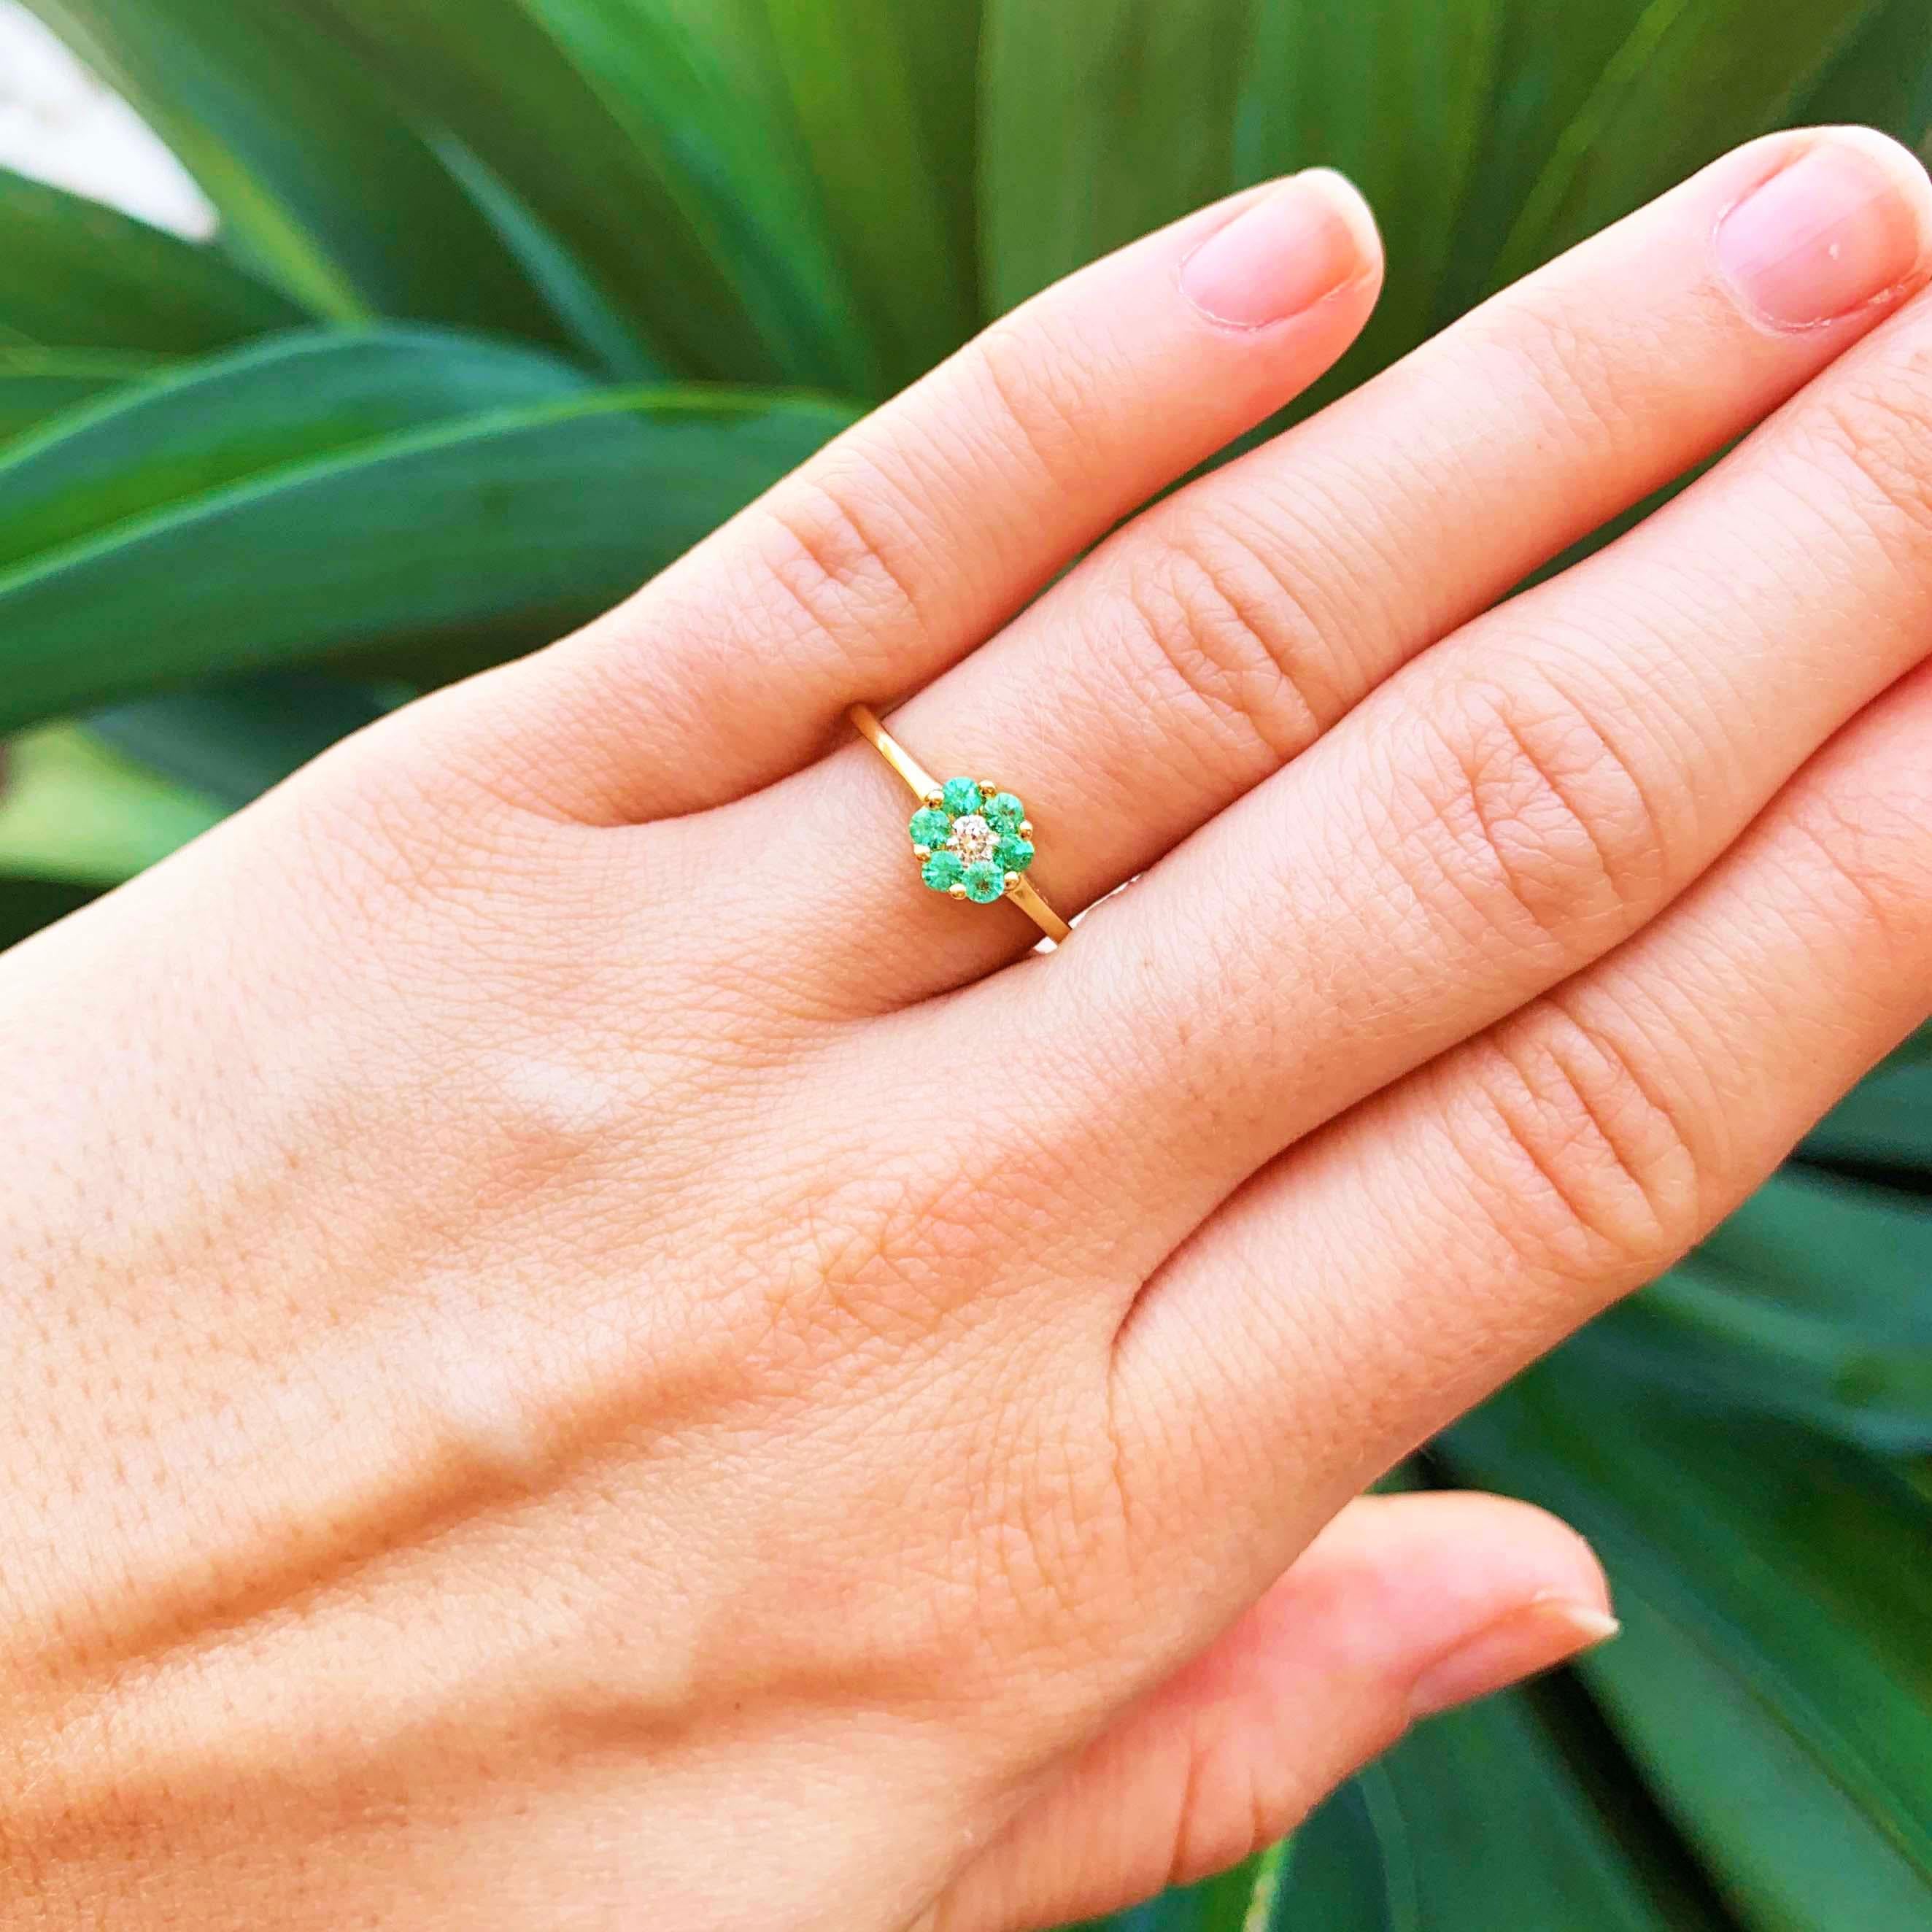 Feiern Sie einen geliebten Menschen im Mai mit diesem Smaragdblütenring! Ein wunderschöner und vielseitiger Ring, den man das ganze Jahr über tragen kann! Die zierliche Blume ist bezaubernd mit schönen grünen Smaragd-